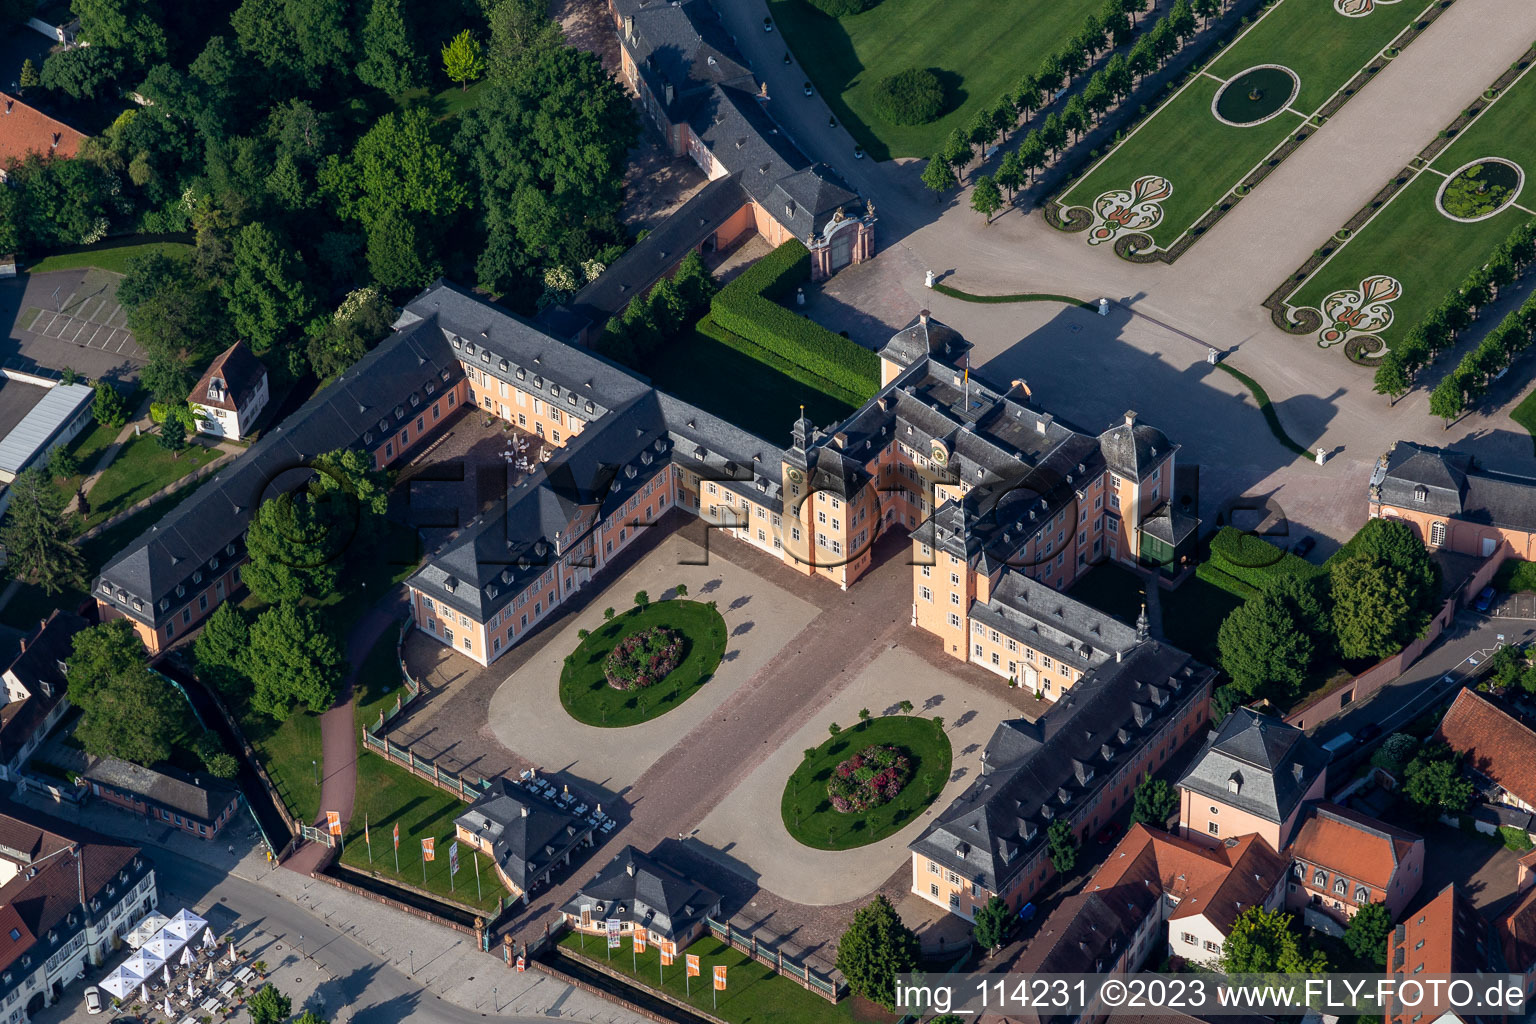 Vue aérienne de Vue sur le château Schwetzingen et le jardin baroque à la française. Le château servait de résidence d'été aux électeurs du Palatinat et a été construit sous sa forme actuelle en 1697. à Schwetzingen dans le département Bade-Wurtemberg, Allemagne